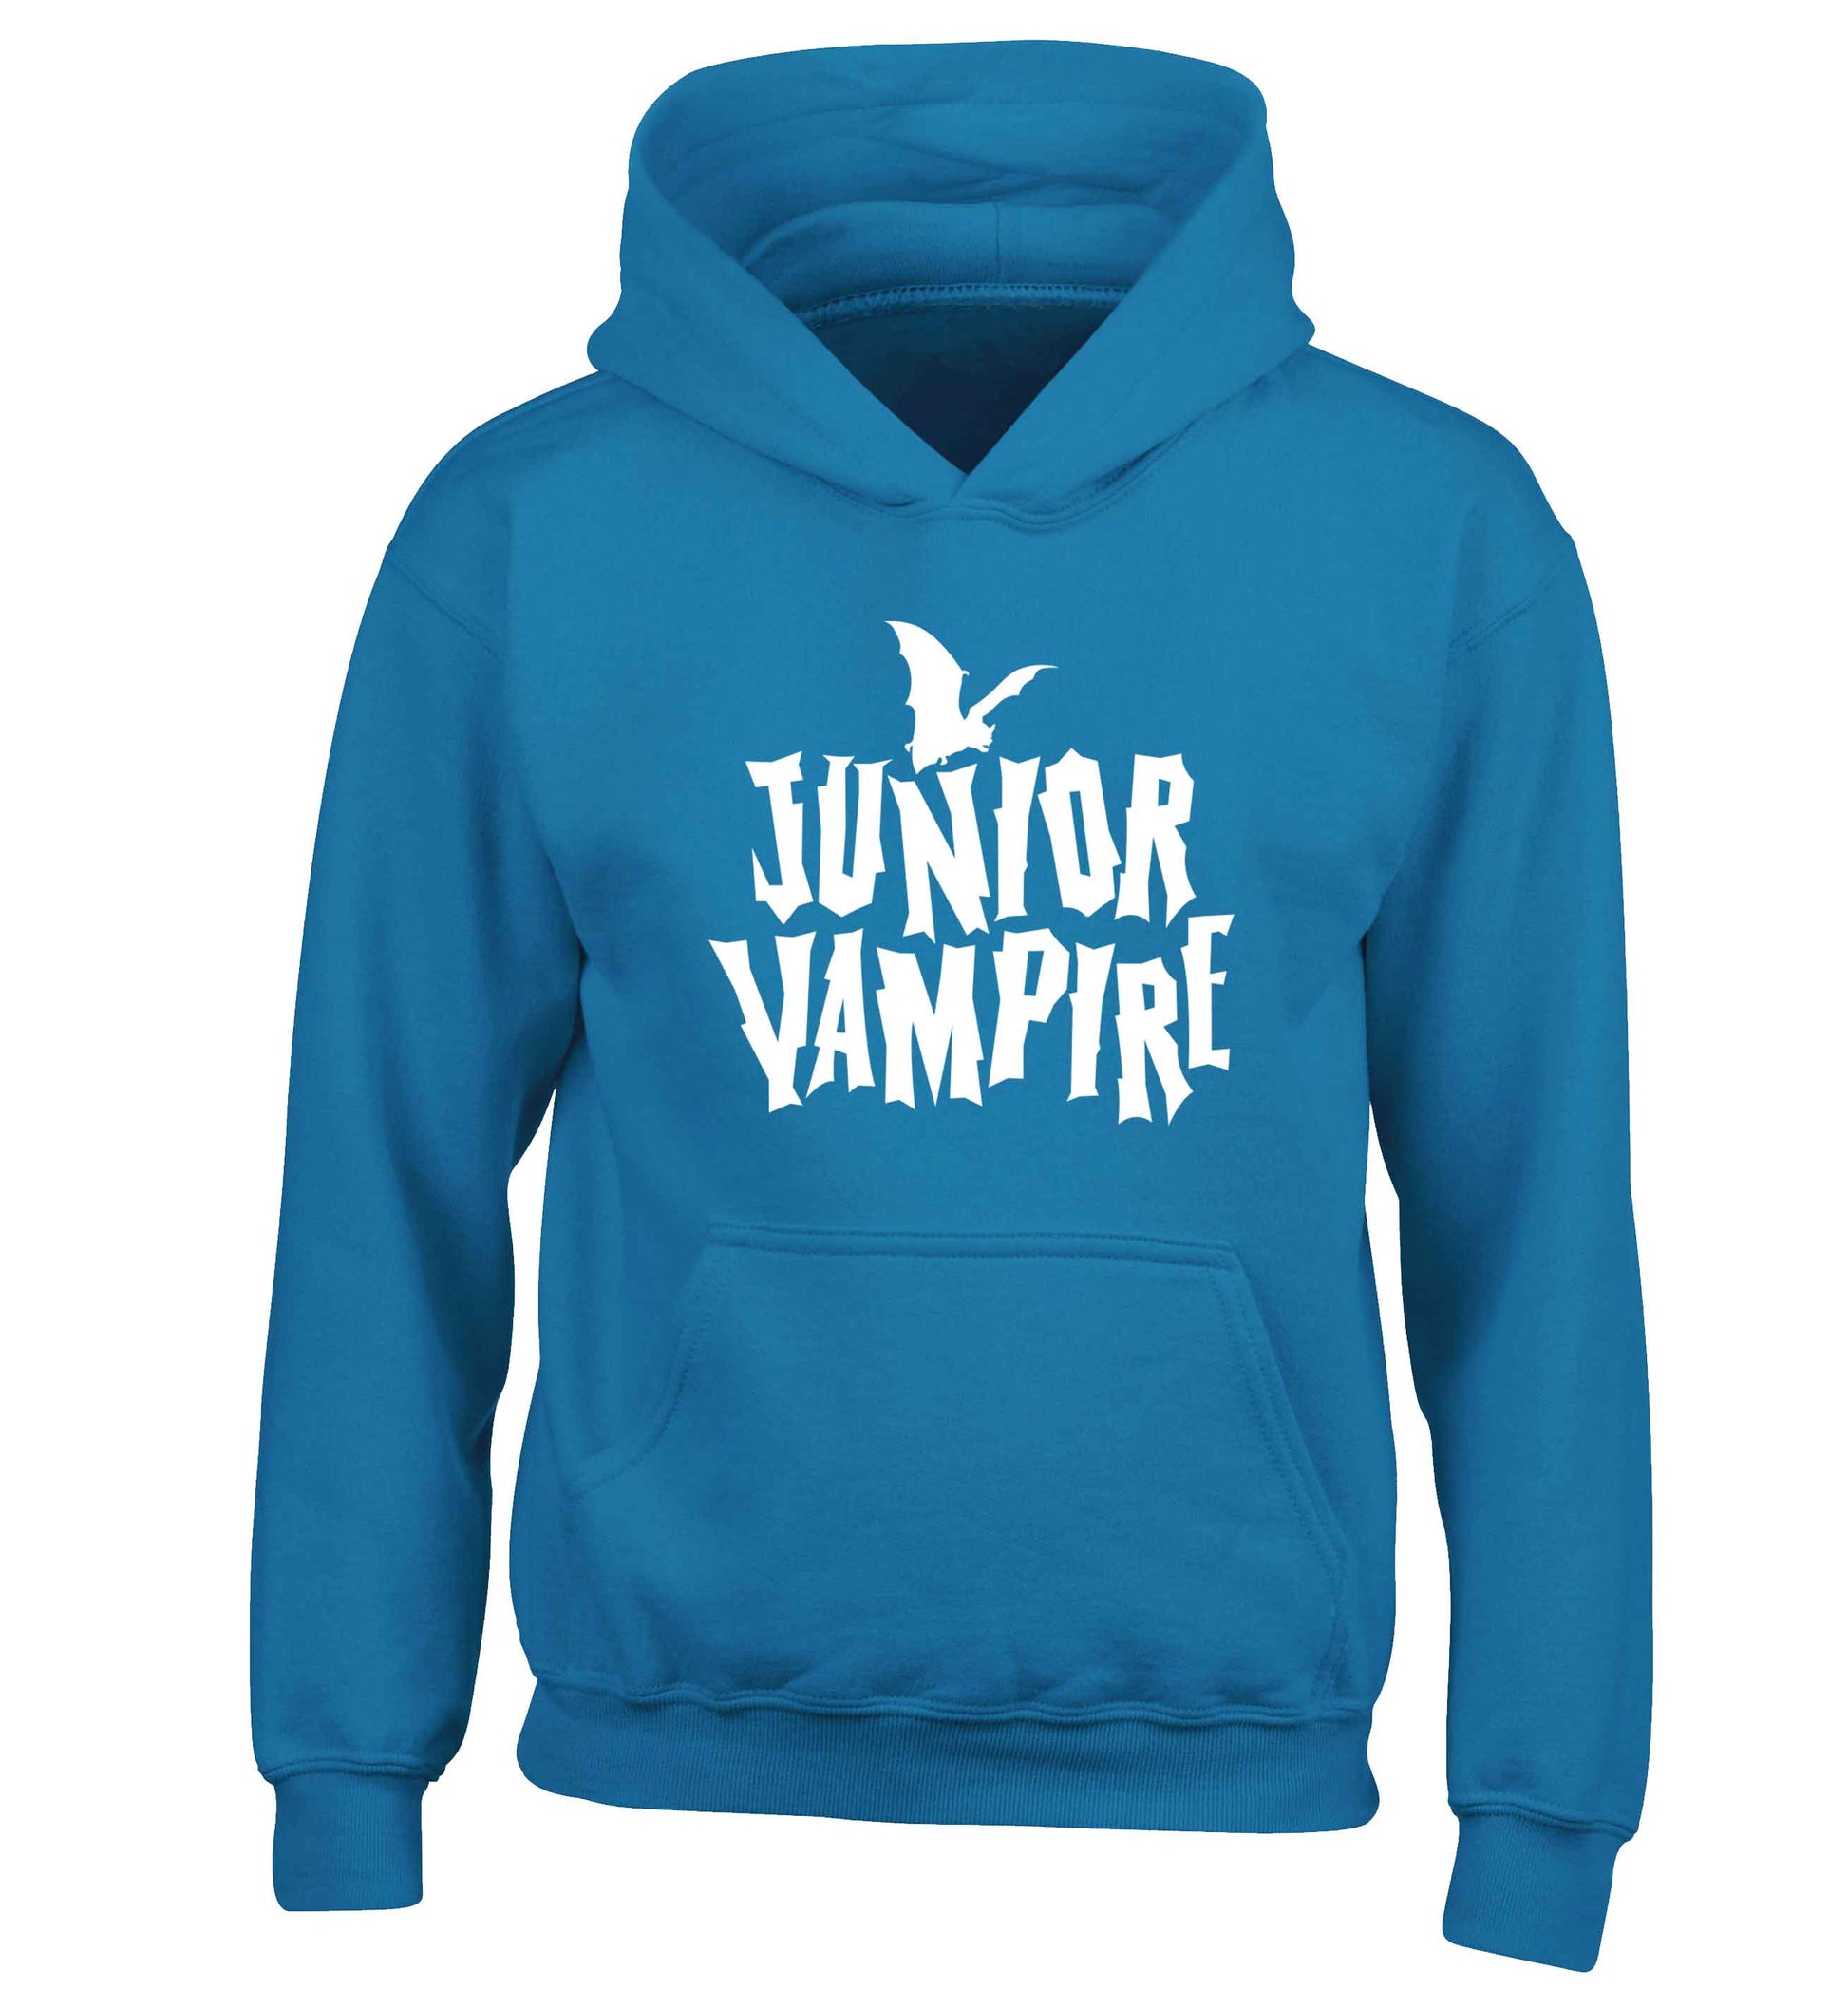 Junior vampire children's blue hoodie 12-13 Years